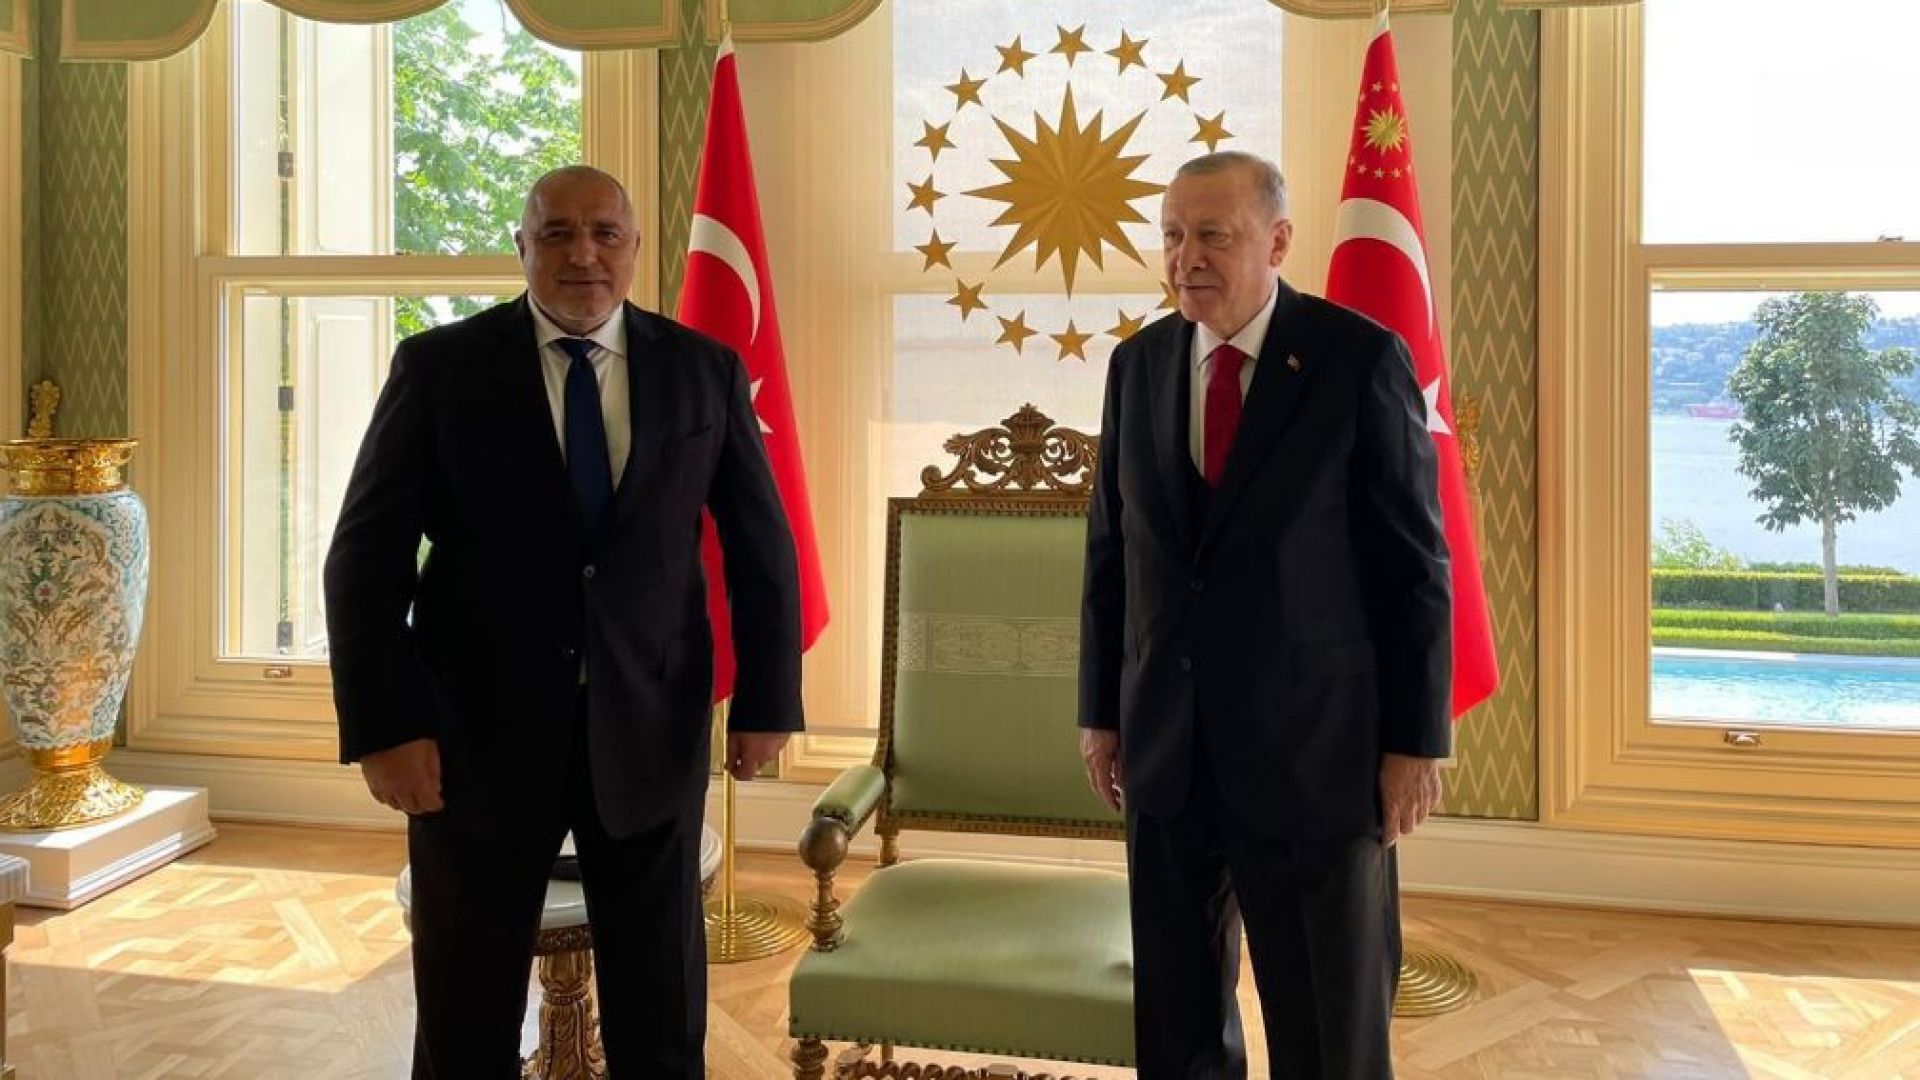 Борисов се срещна с Ердоган (видео)